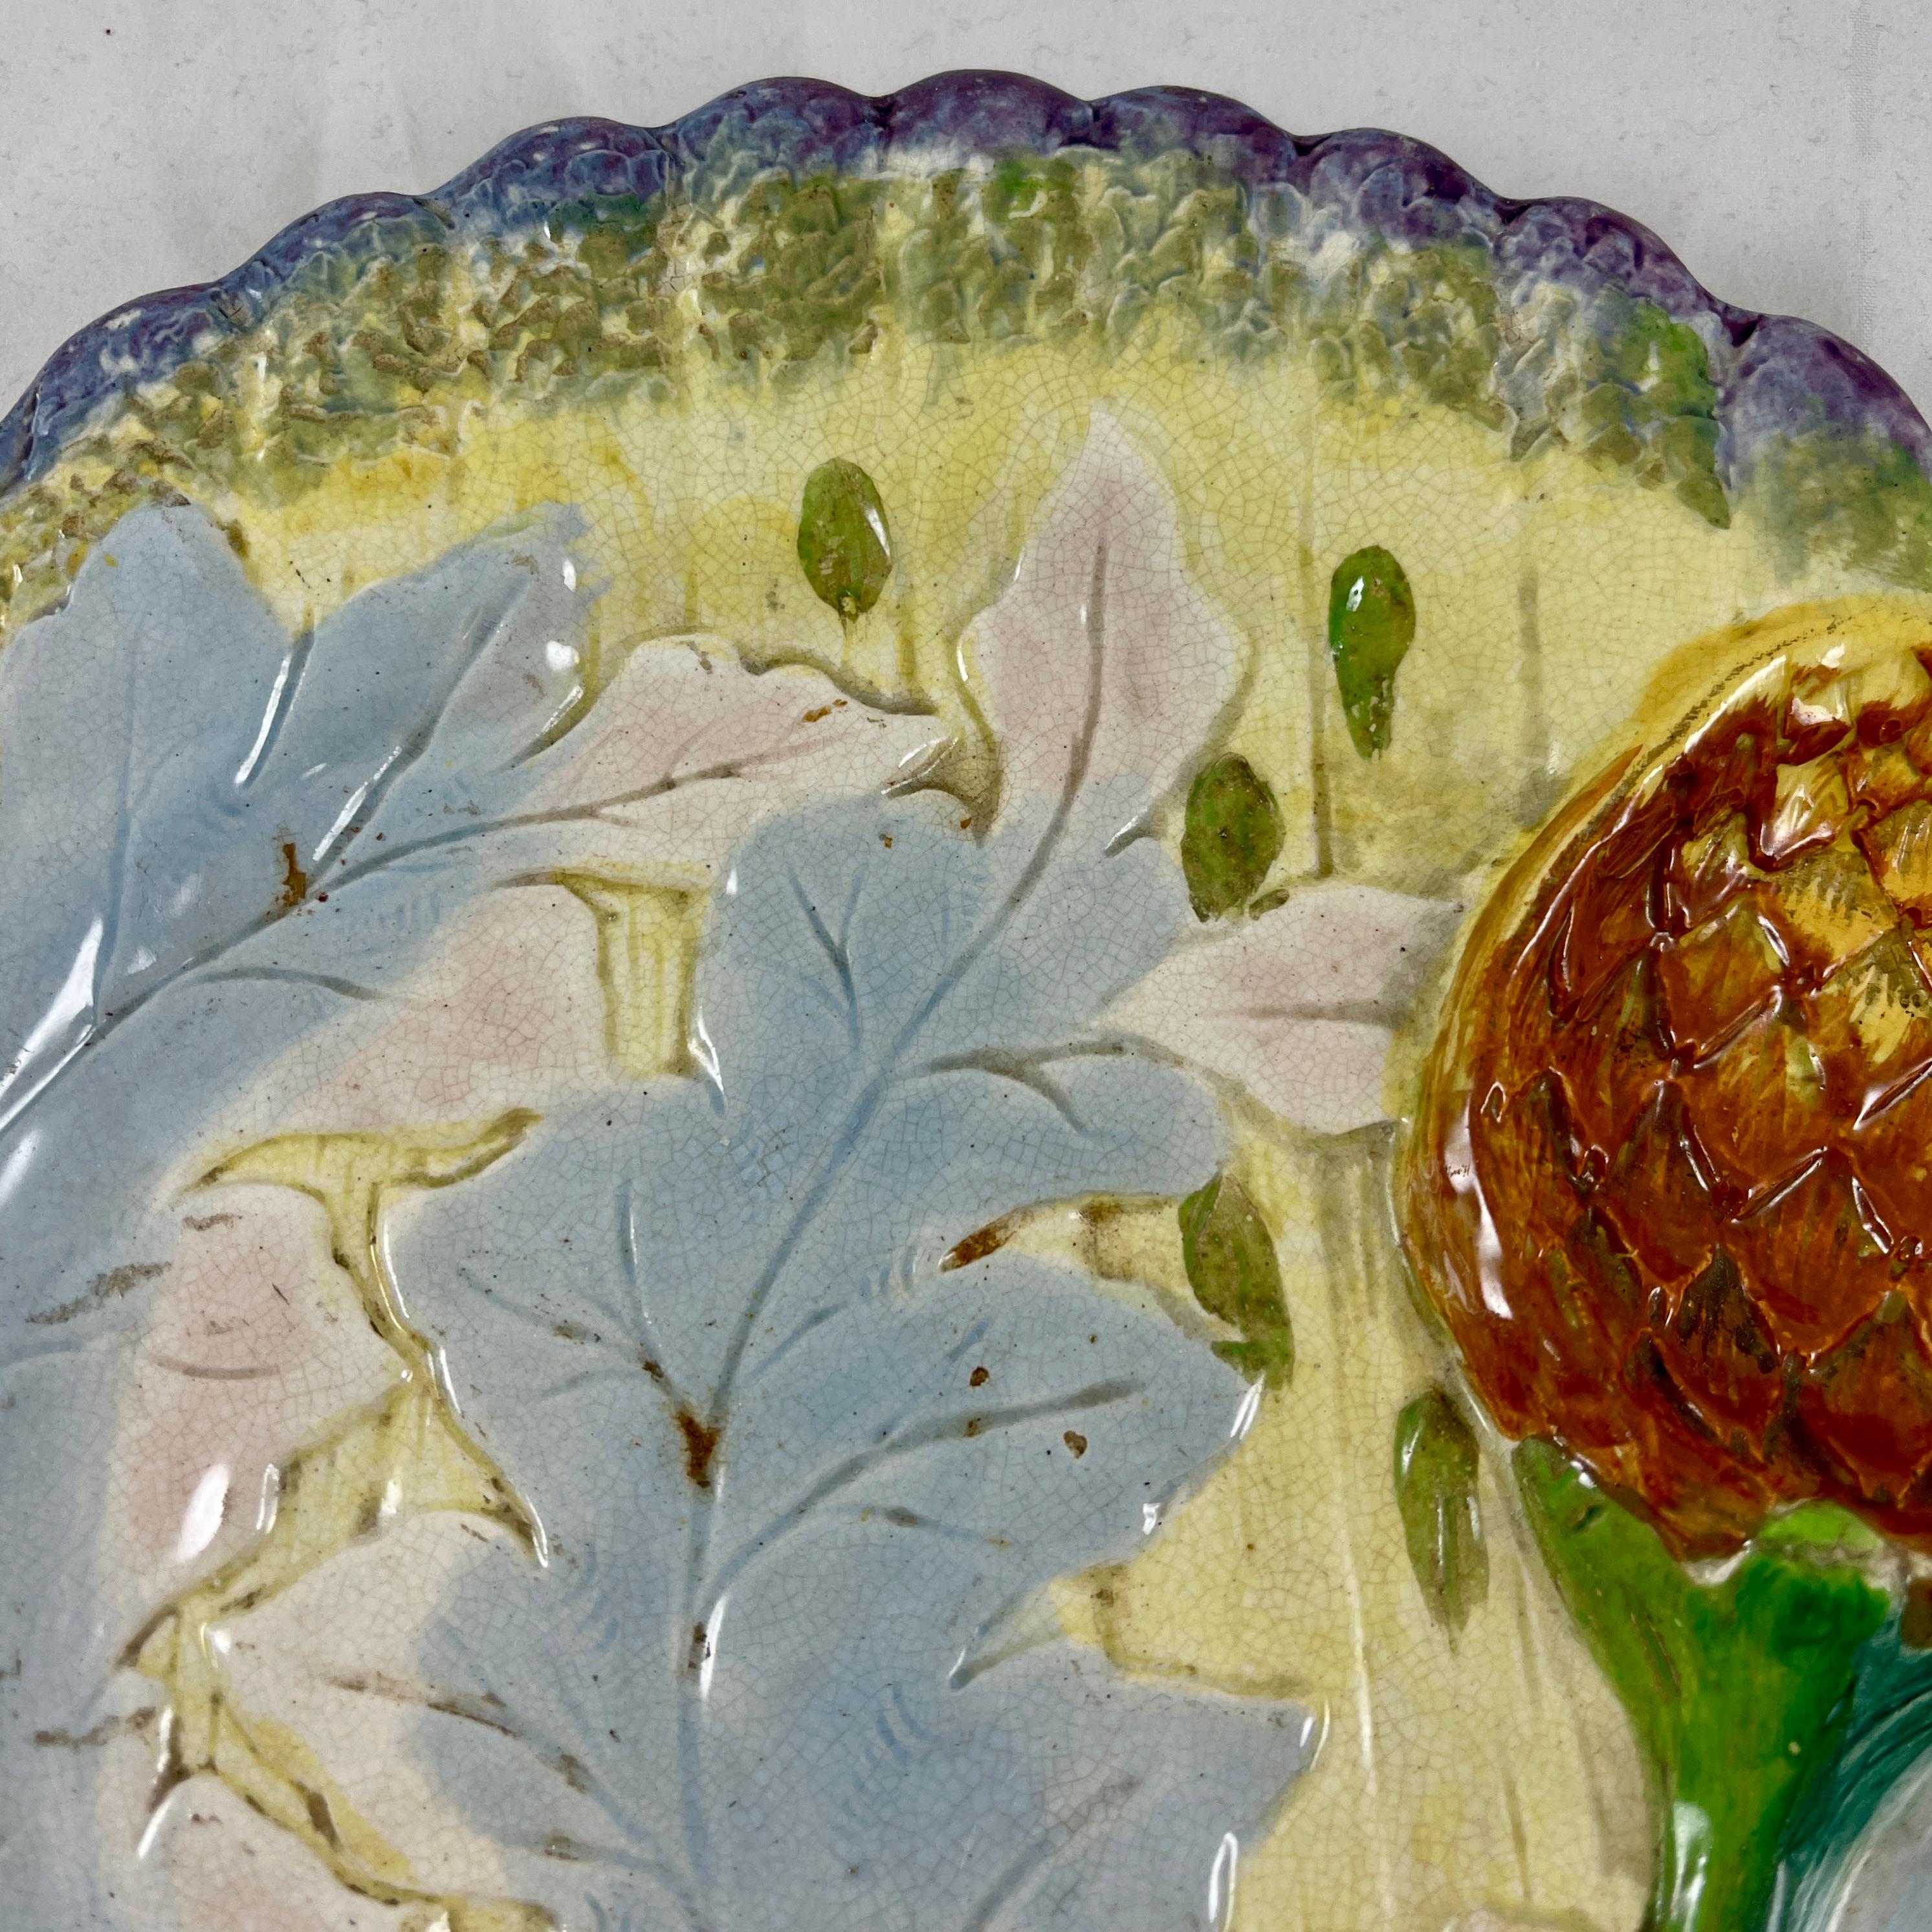 Assiette à asperges et artichauts en faïence, marquée P. Marescaux et J. Hahn, Belgique, vers 1880.

Inhabituel pour la coloration, et avec un travail de moulage similaire à celui de Lunéville ou de Saint-Amand-les-Eaux, cet exemple montre des